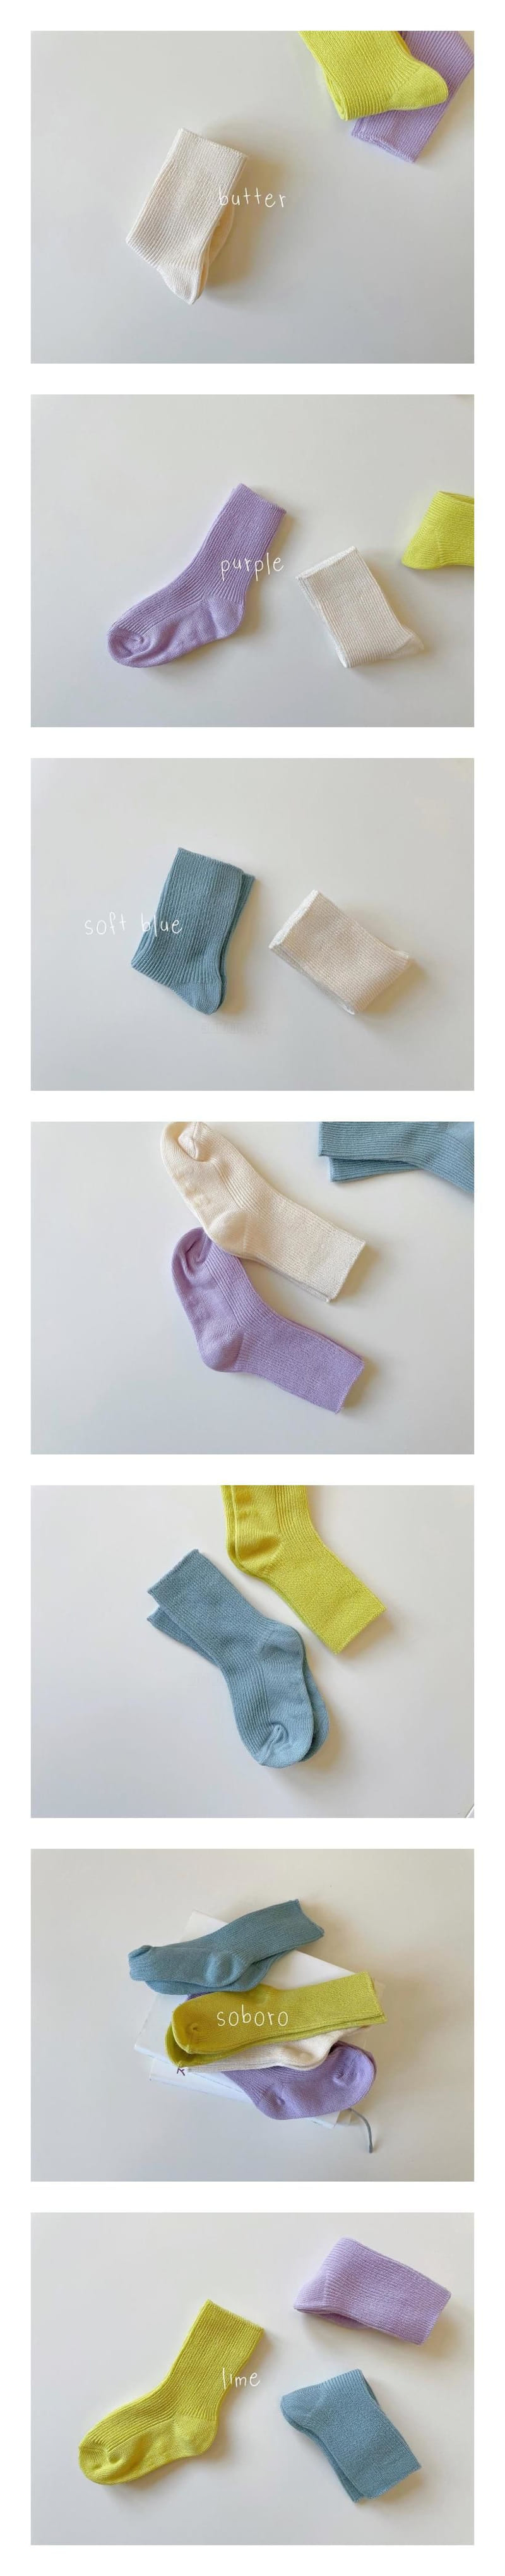 Teamand - Korean Children Fashion - #littlefashionista - Soboro Socks Set